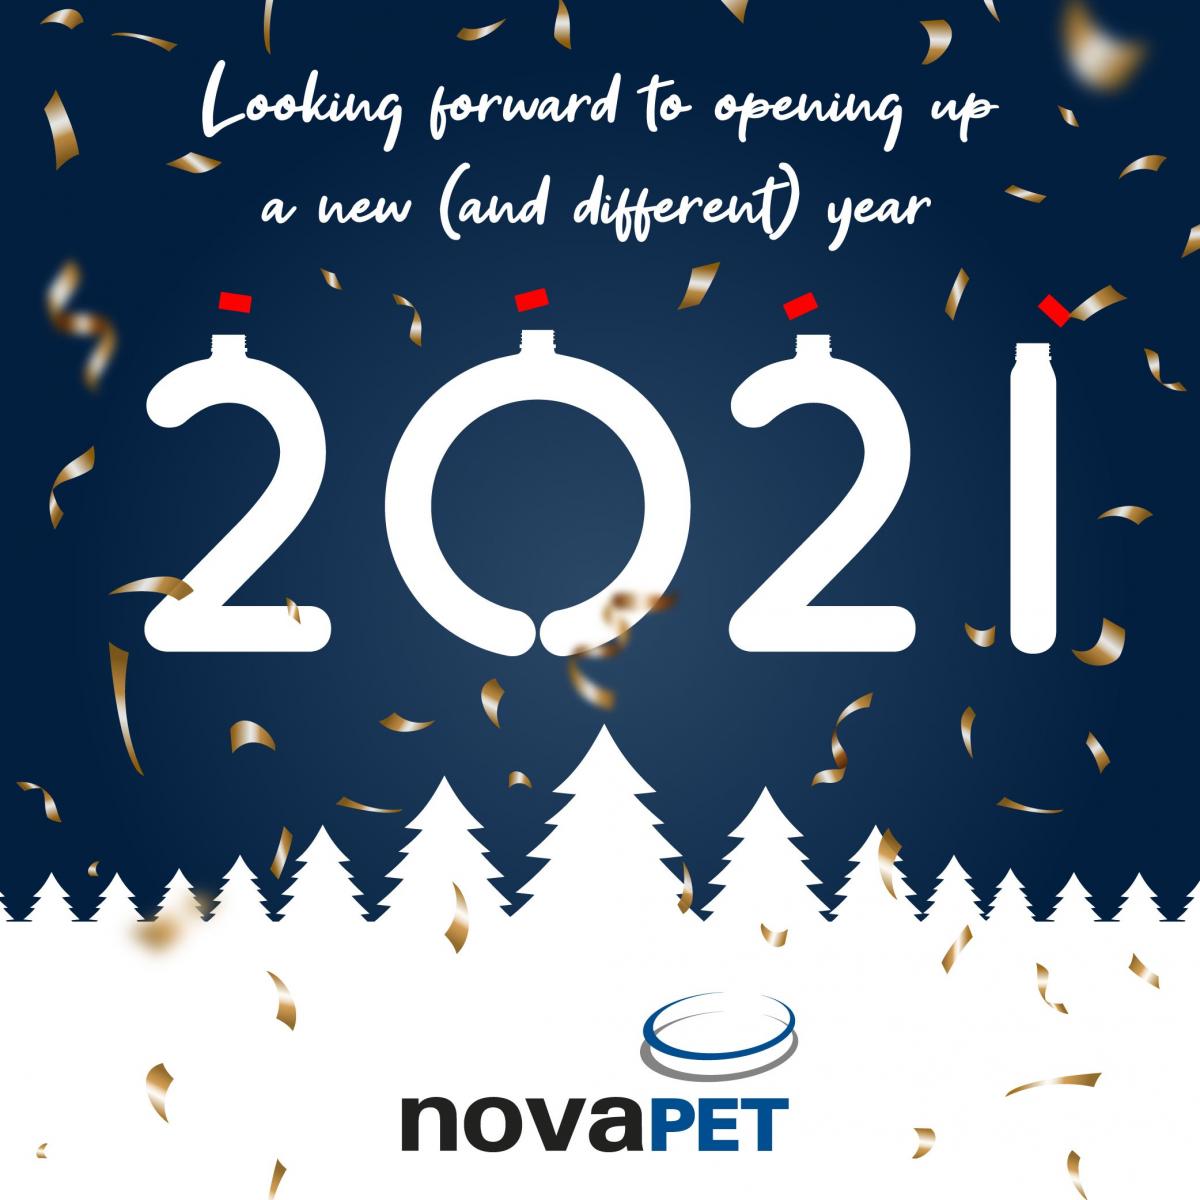 Novapet happy new year 2021